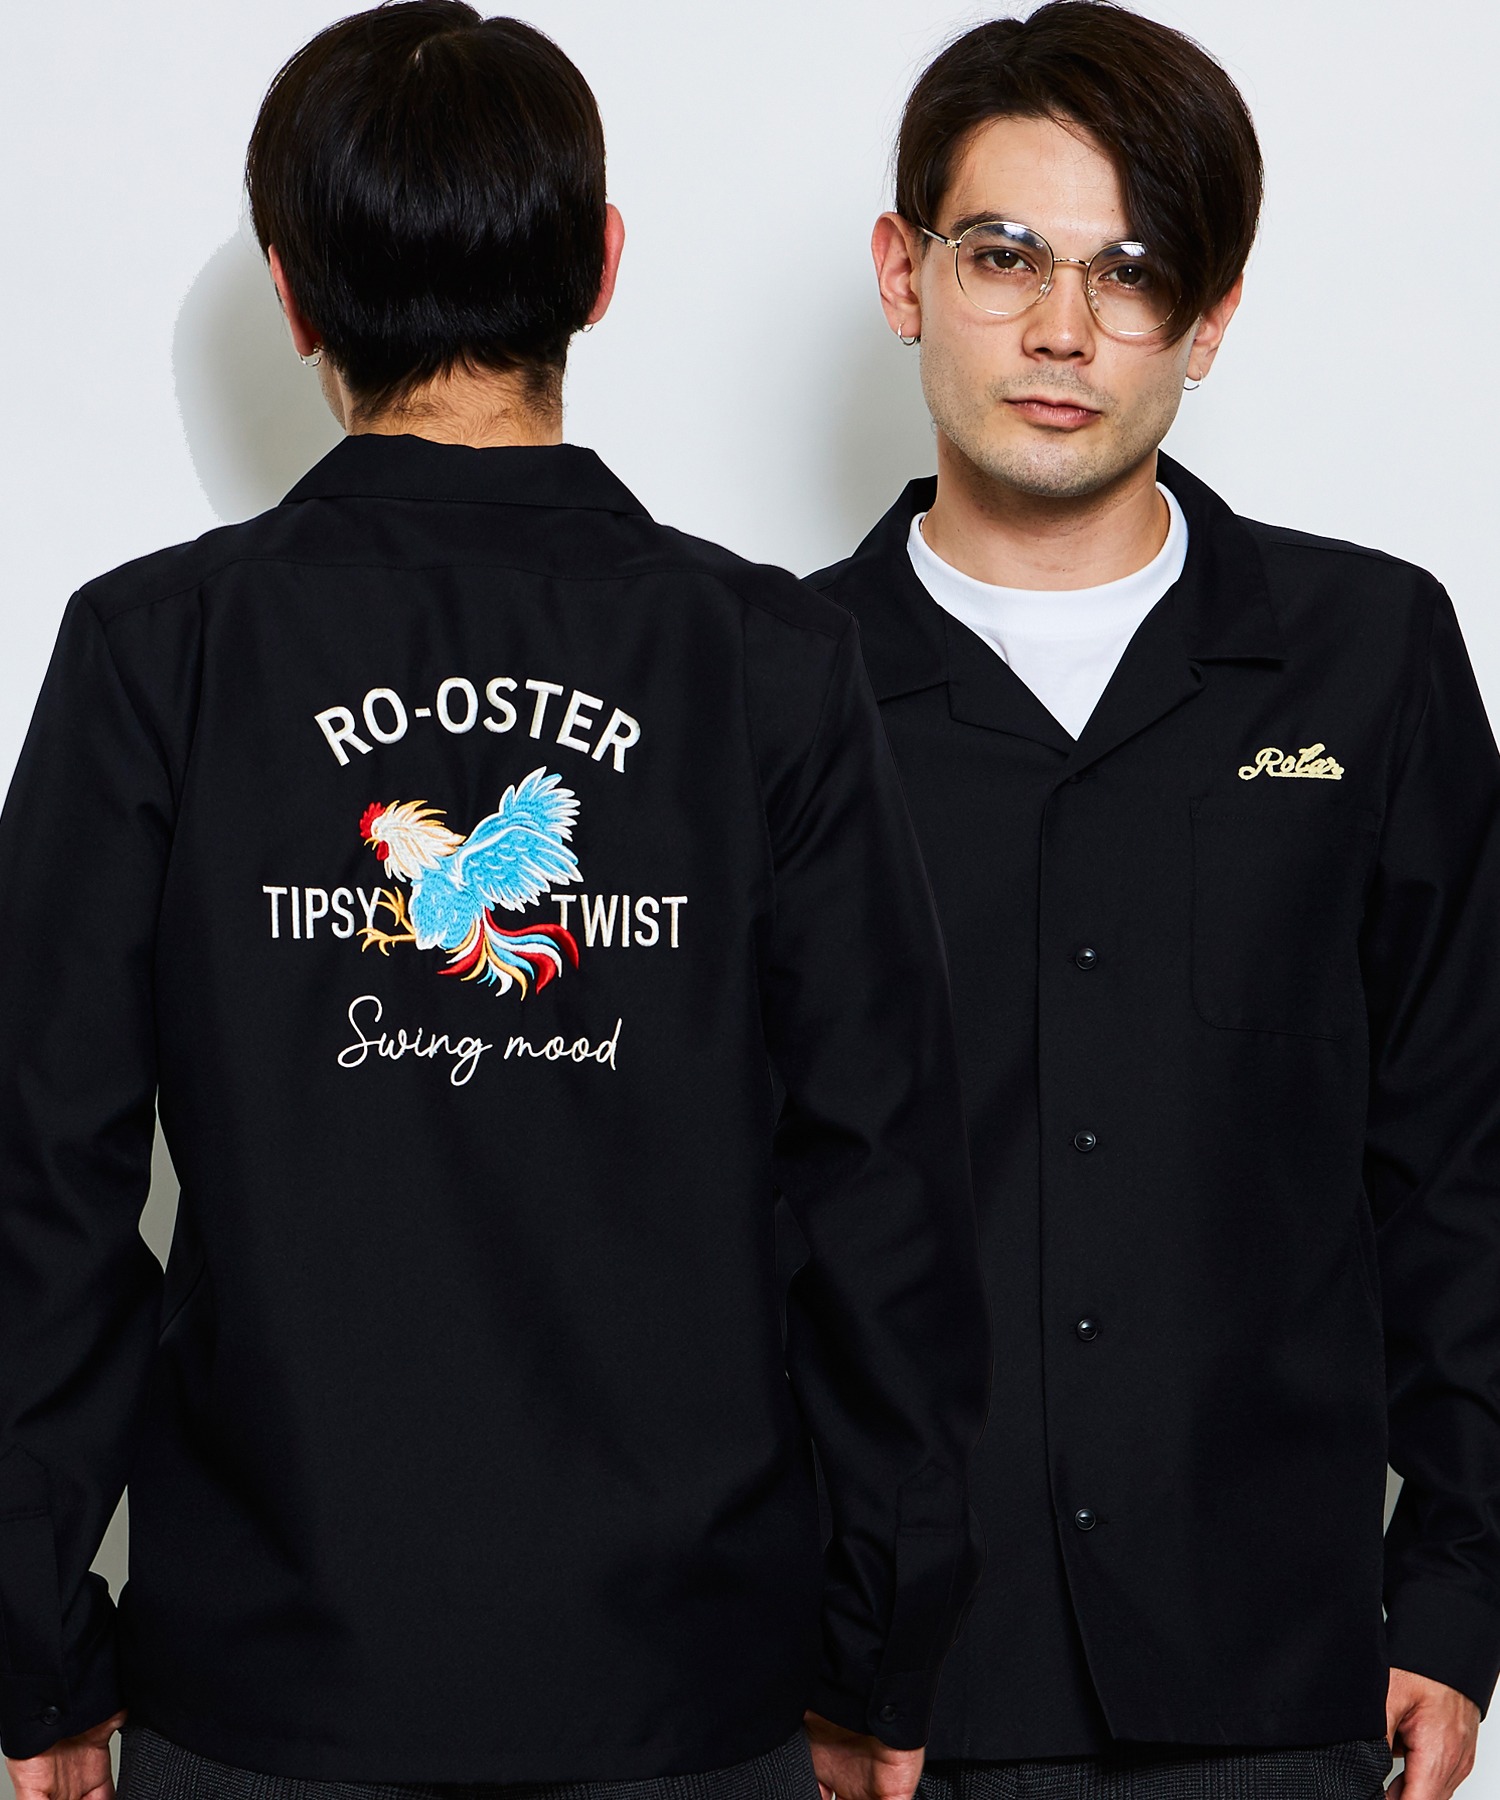 ROTARRooster Bowling shirt 2022年のクリスマス オープニング大セール ルースター ボウリングシャツ